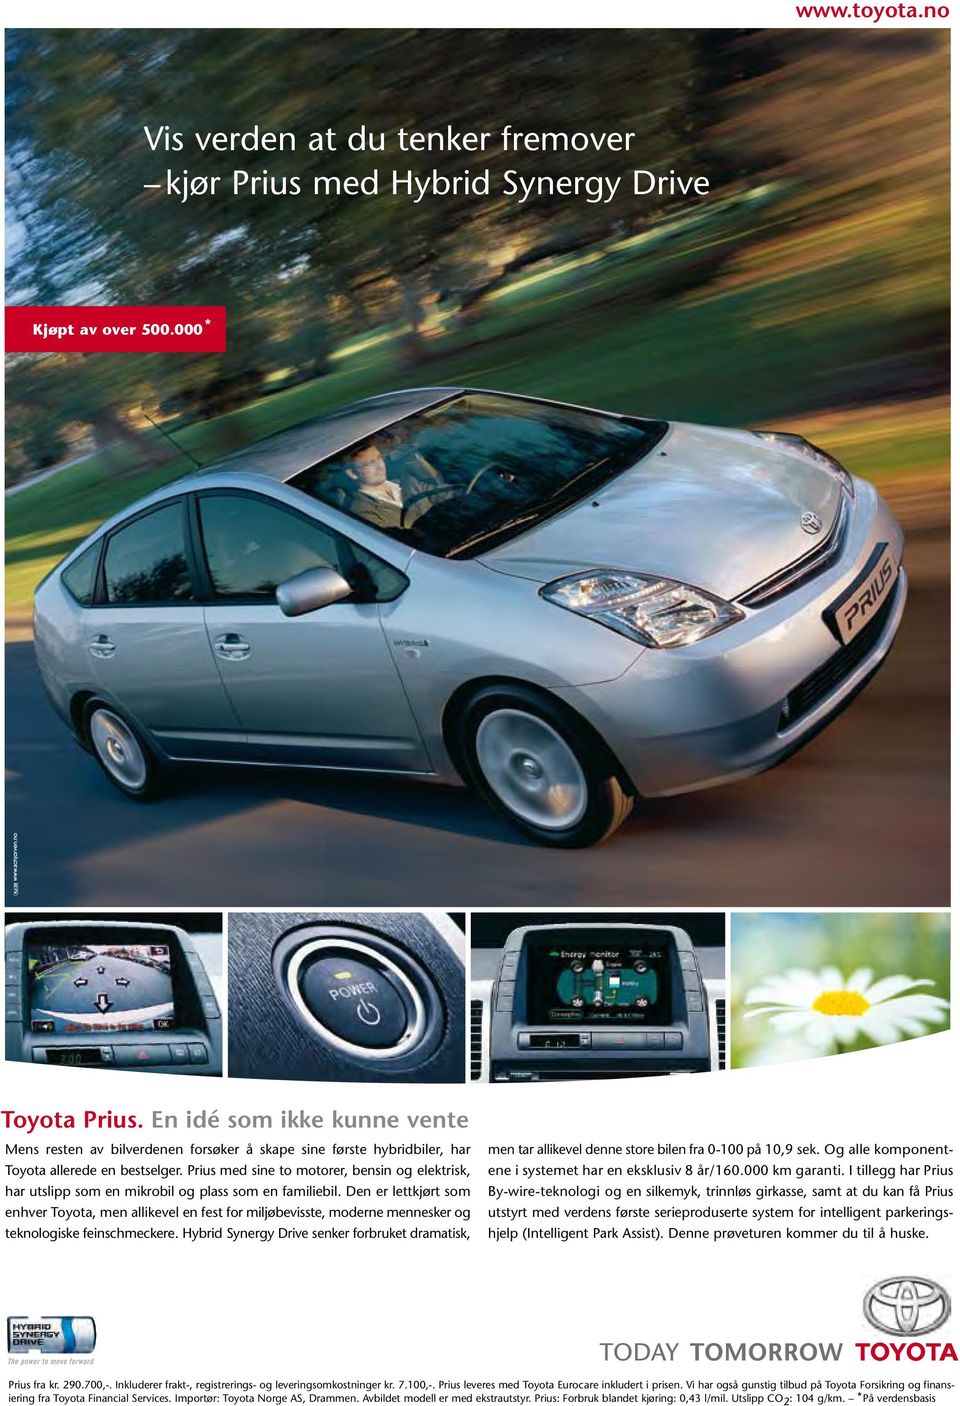 Prius med sine to motorer, bensin og elektrisk, har utslipp som en mikrobil og plass som en familiebil.